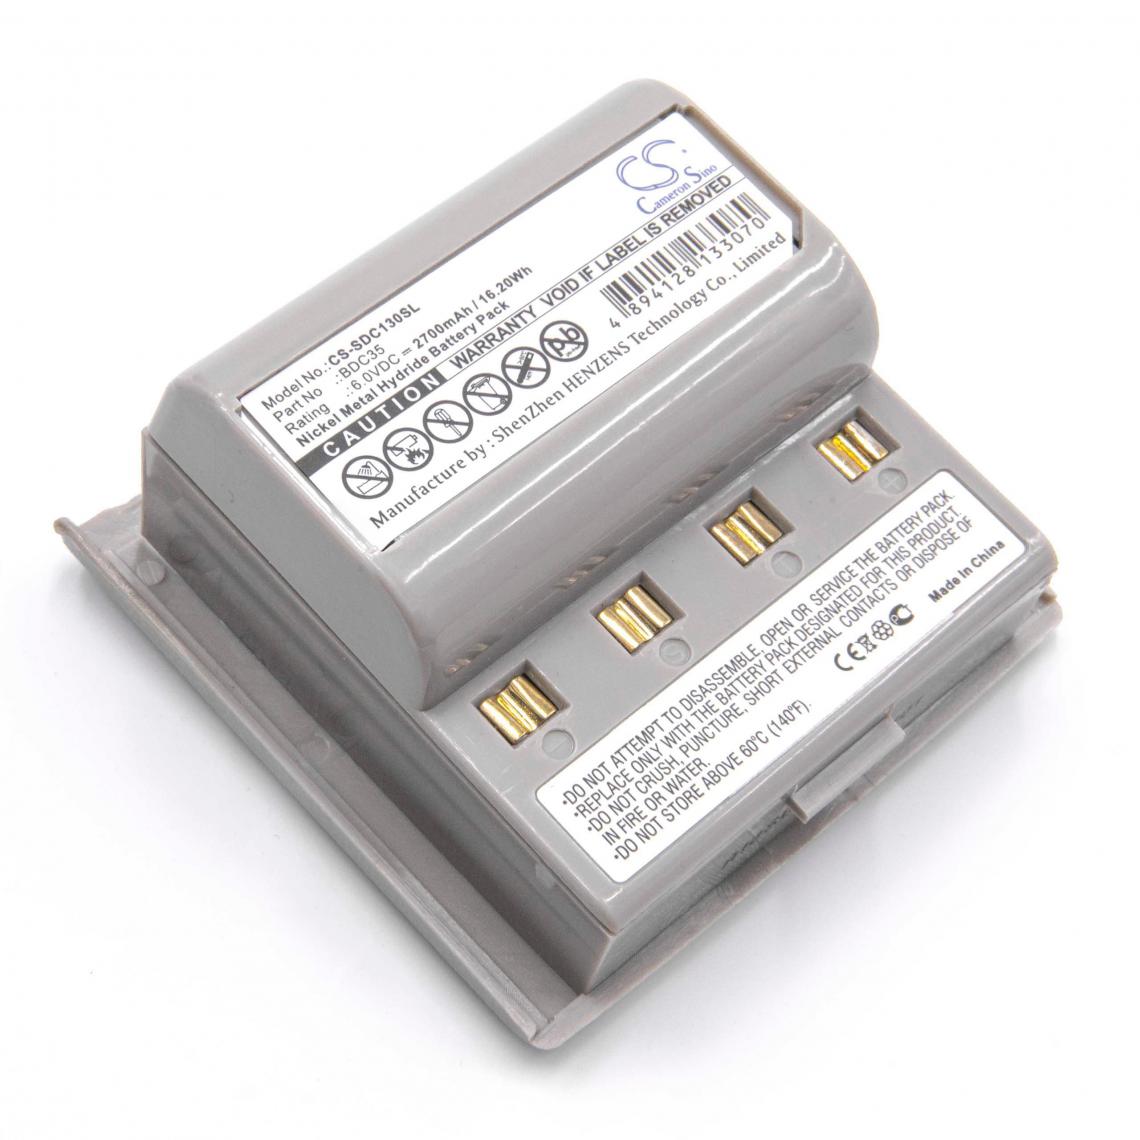 Vhbw - vhbw NiMH batterie 2700mAh (6V) pour appareil de mesure comme Sokkia BDC35A - Piles rechargeables